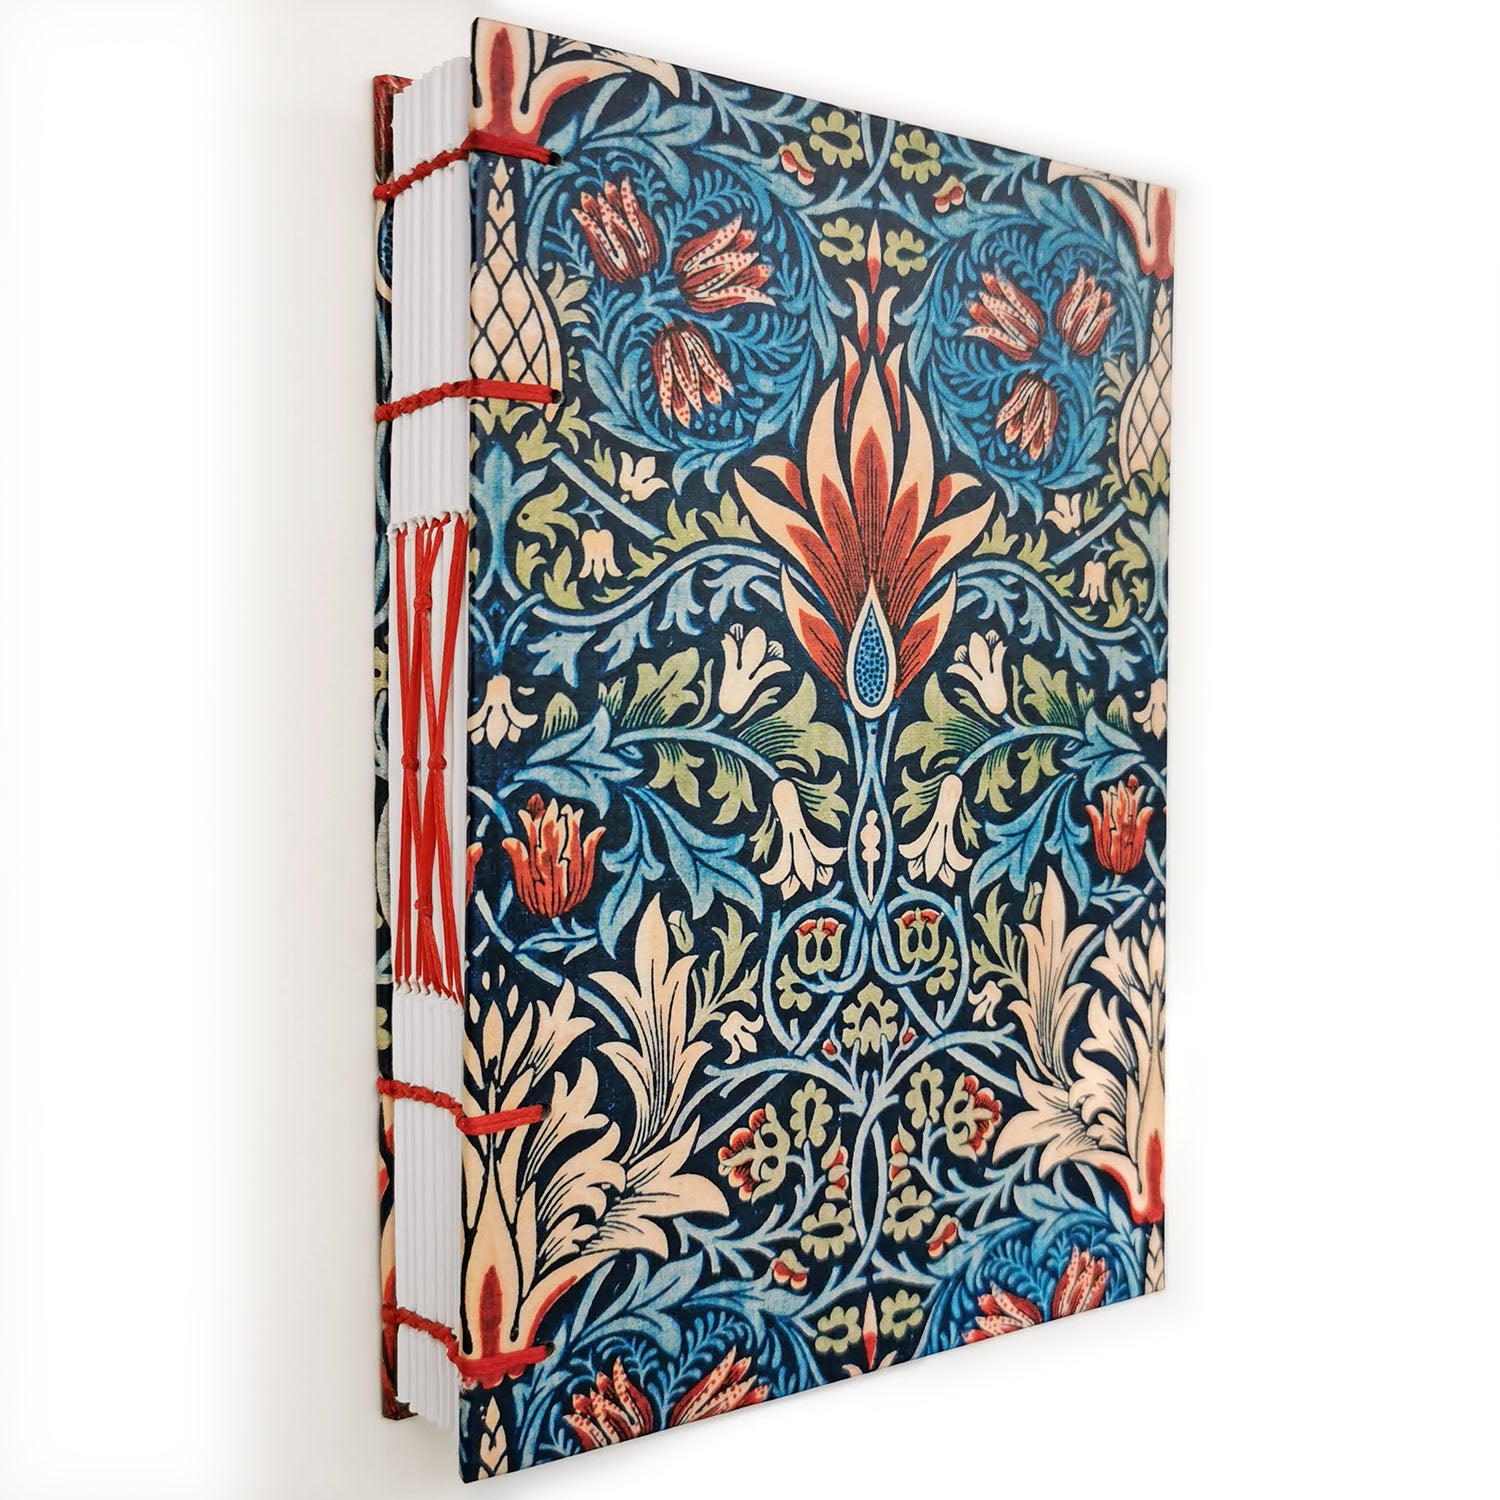 Χειροποίητo Σημειωματάριo με Βυζαντινή Βιβλιοδεσία - William Morris - Snakeshead pattern